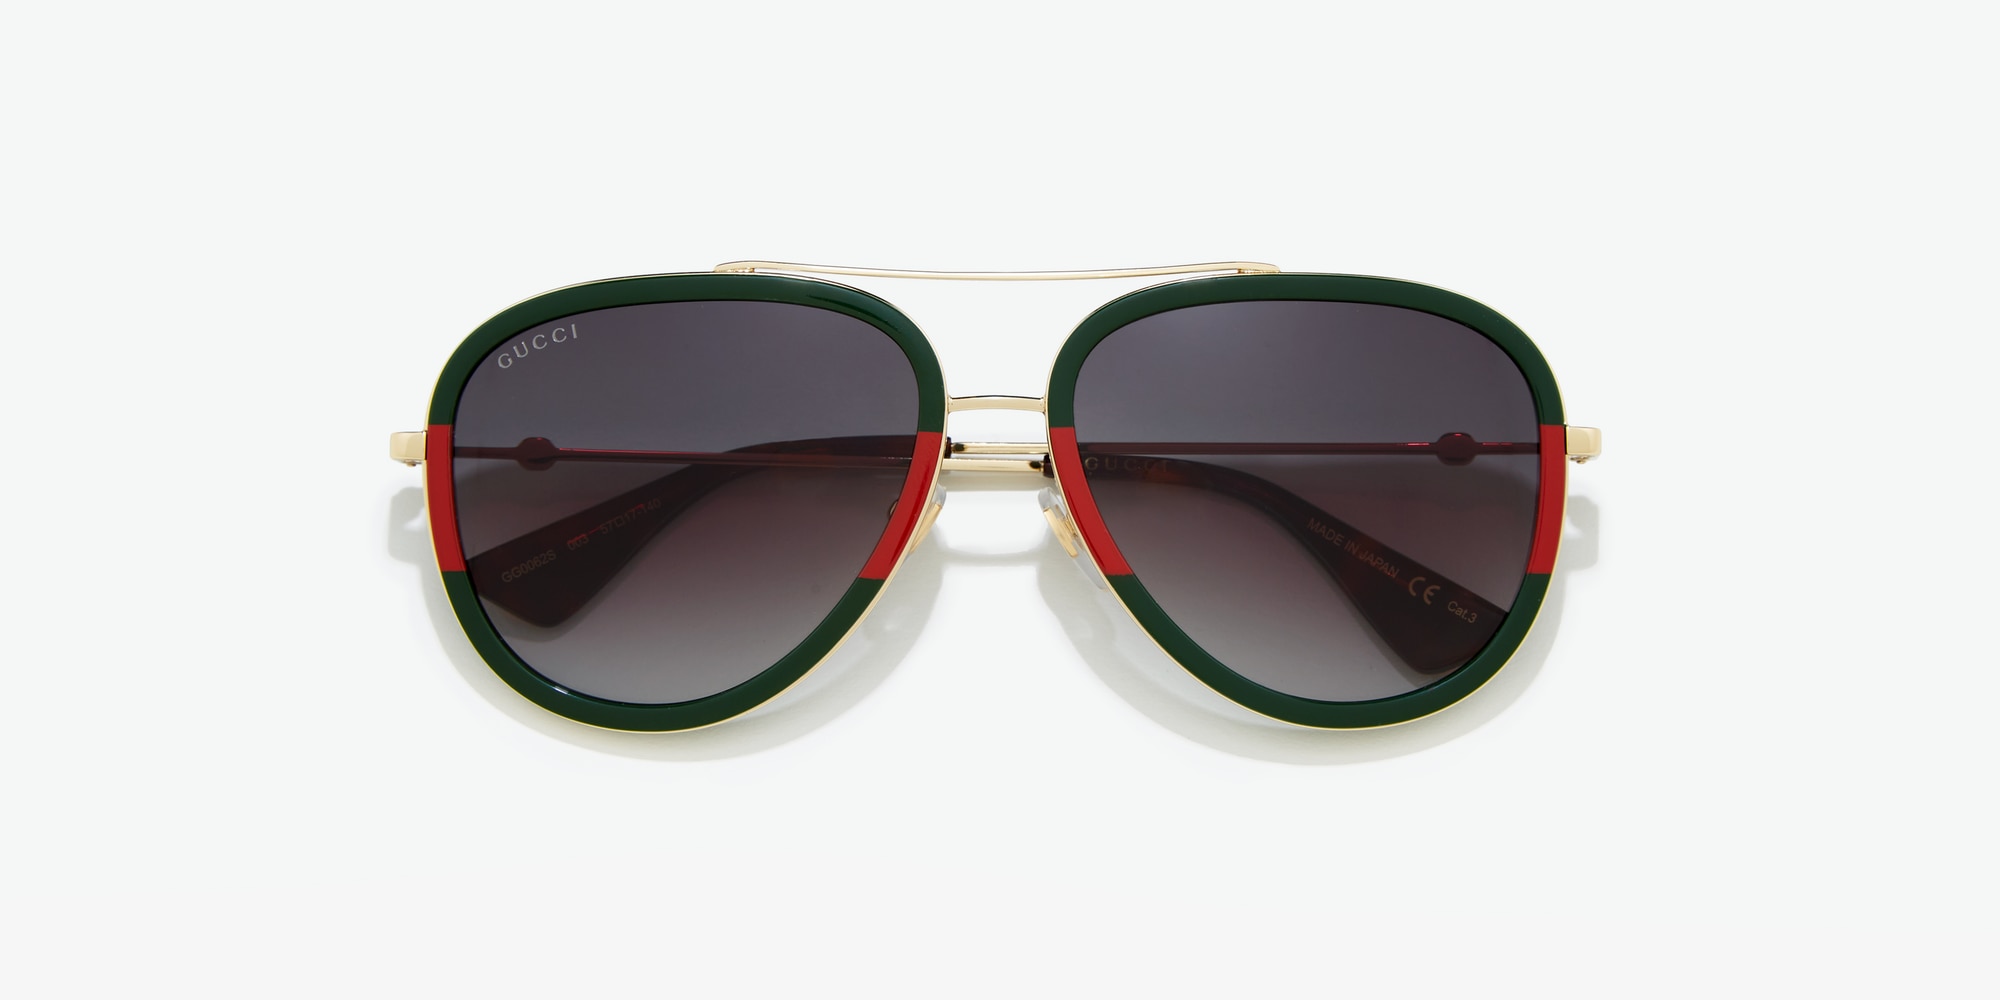 Gucci Men's Frame Less Aviator Sunglasses w/Burgundy Lenses and Web 622874  8165 | eBay